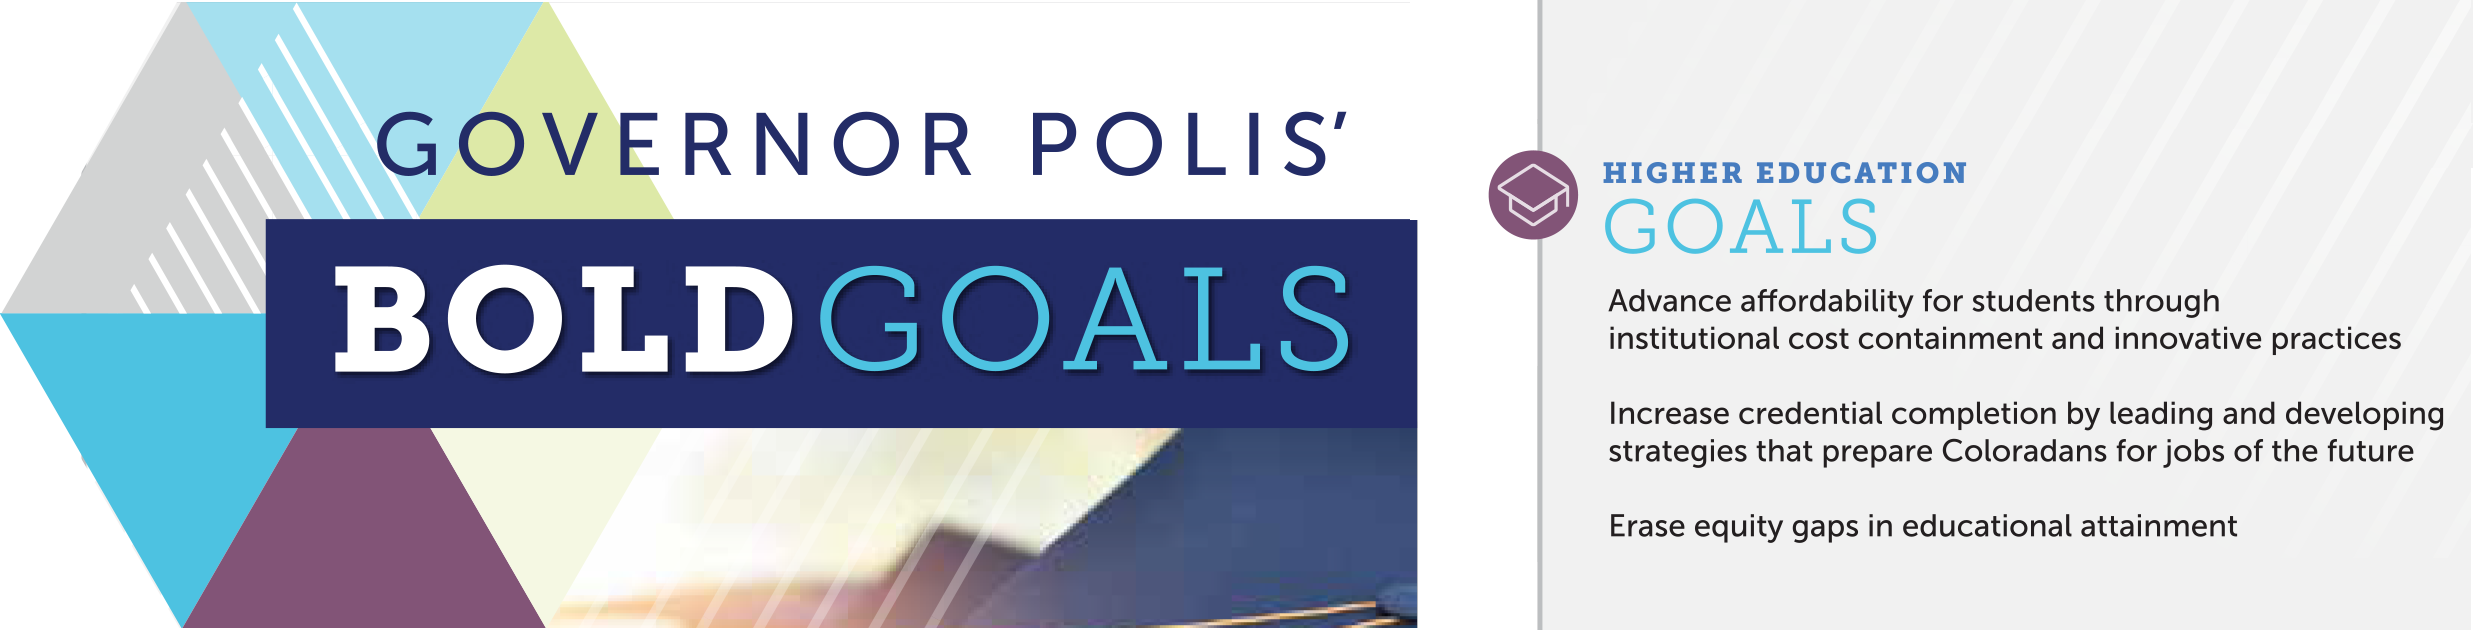 Governor Polis' Bold Goals